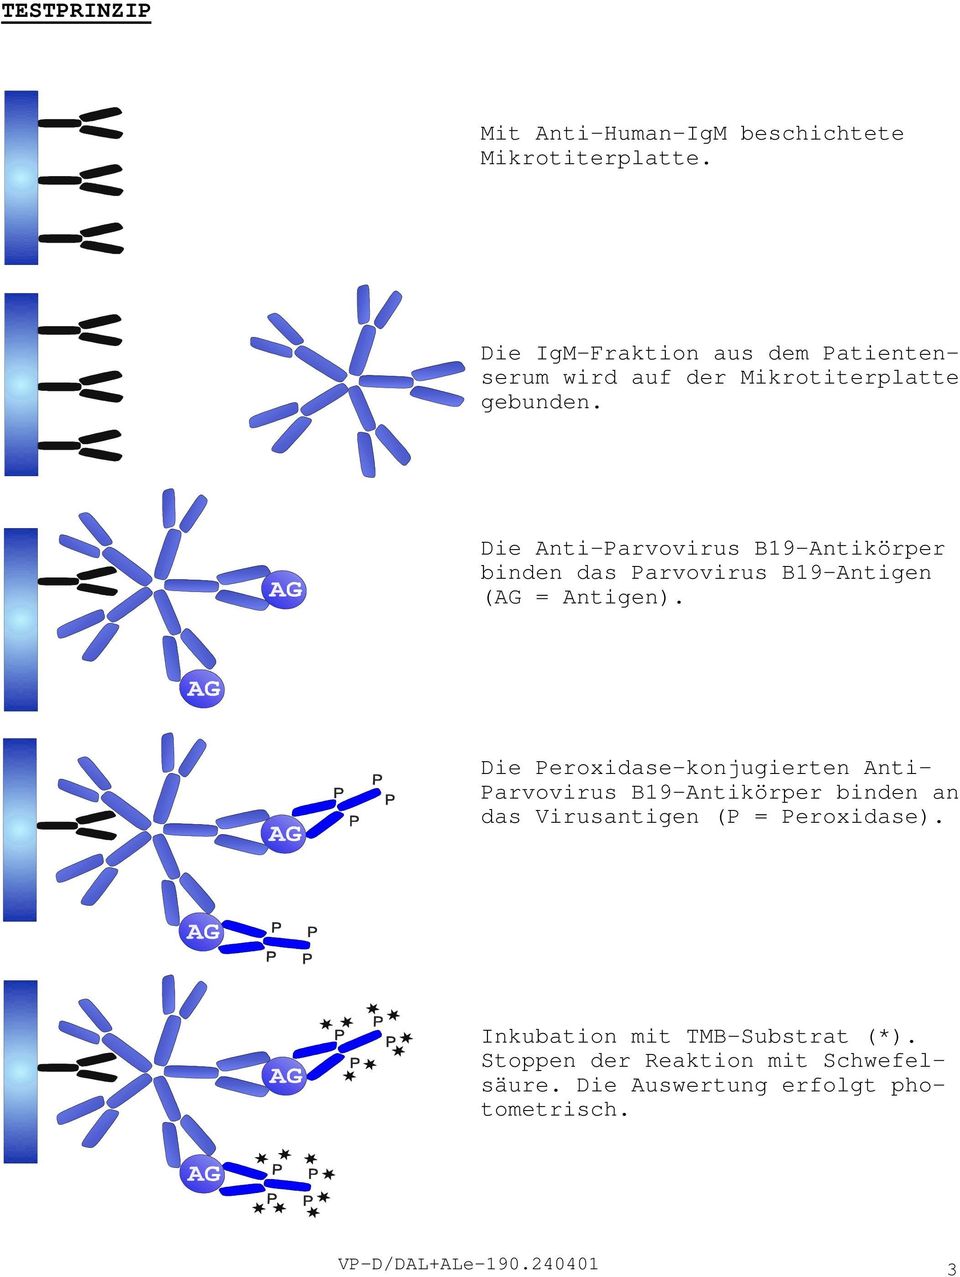 Die Anti-Parvovirus B19-Antikörper binden das Parvovirus B19-Antigen (AG = Antigen).